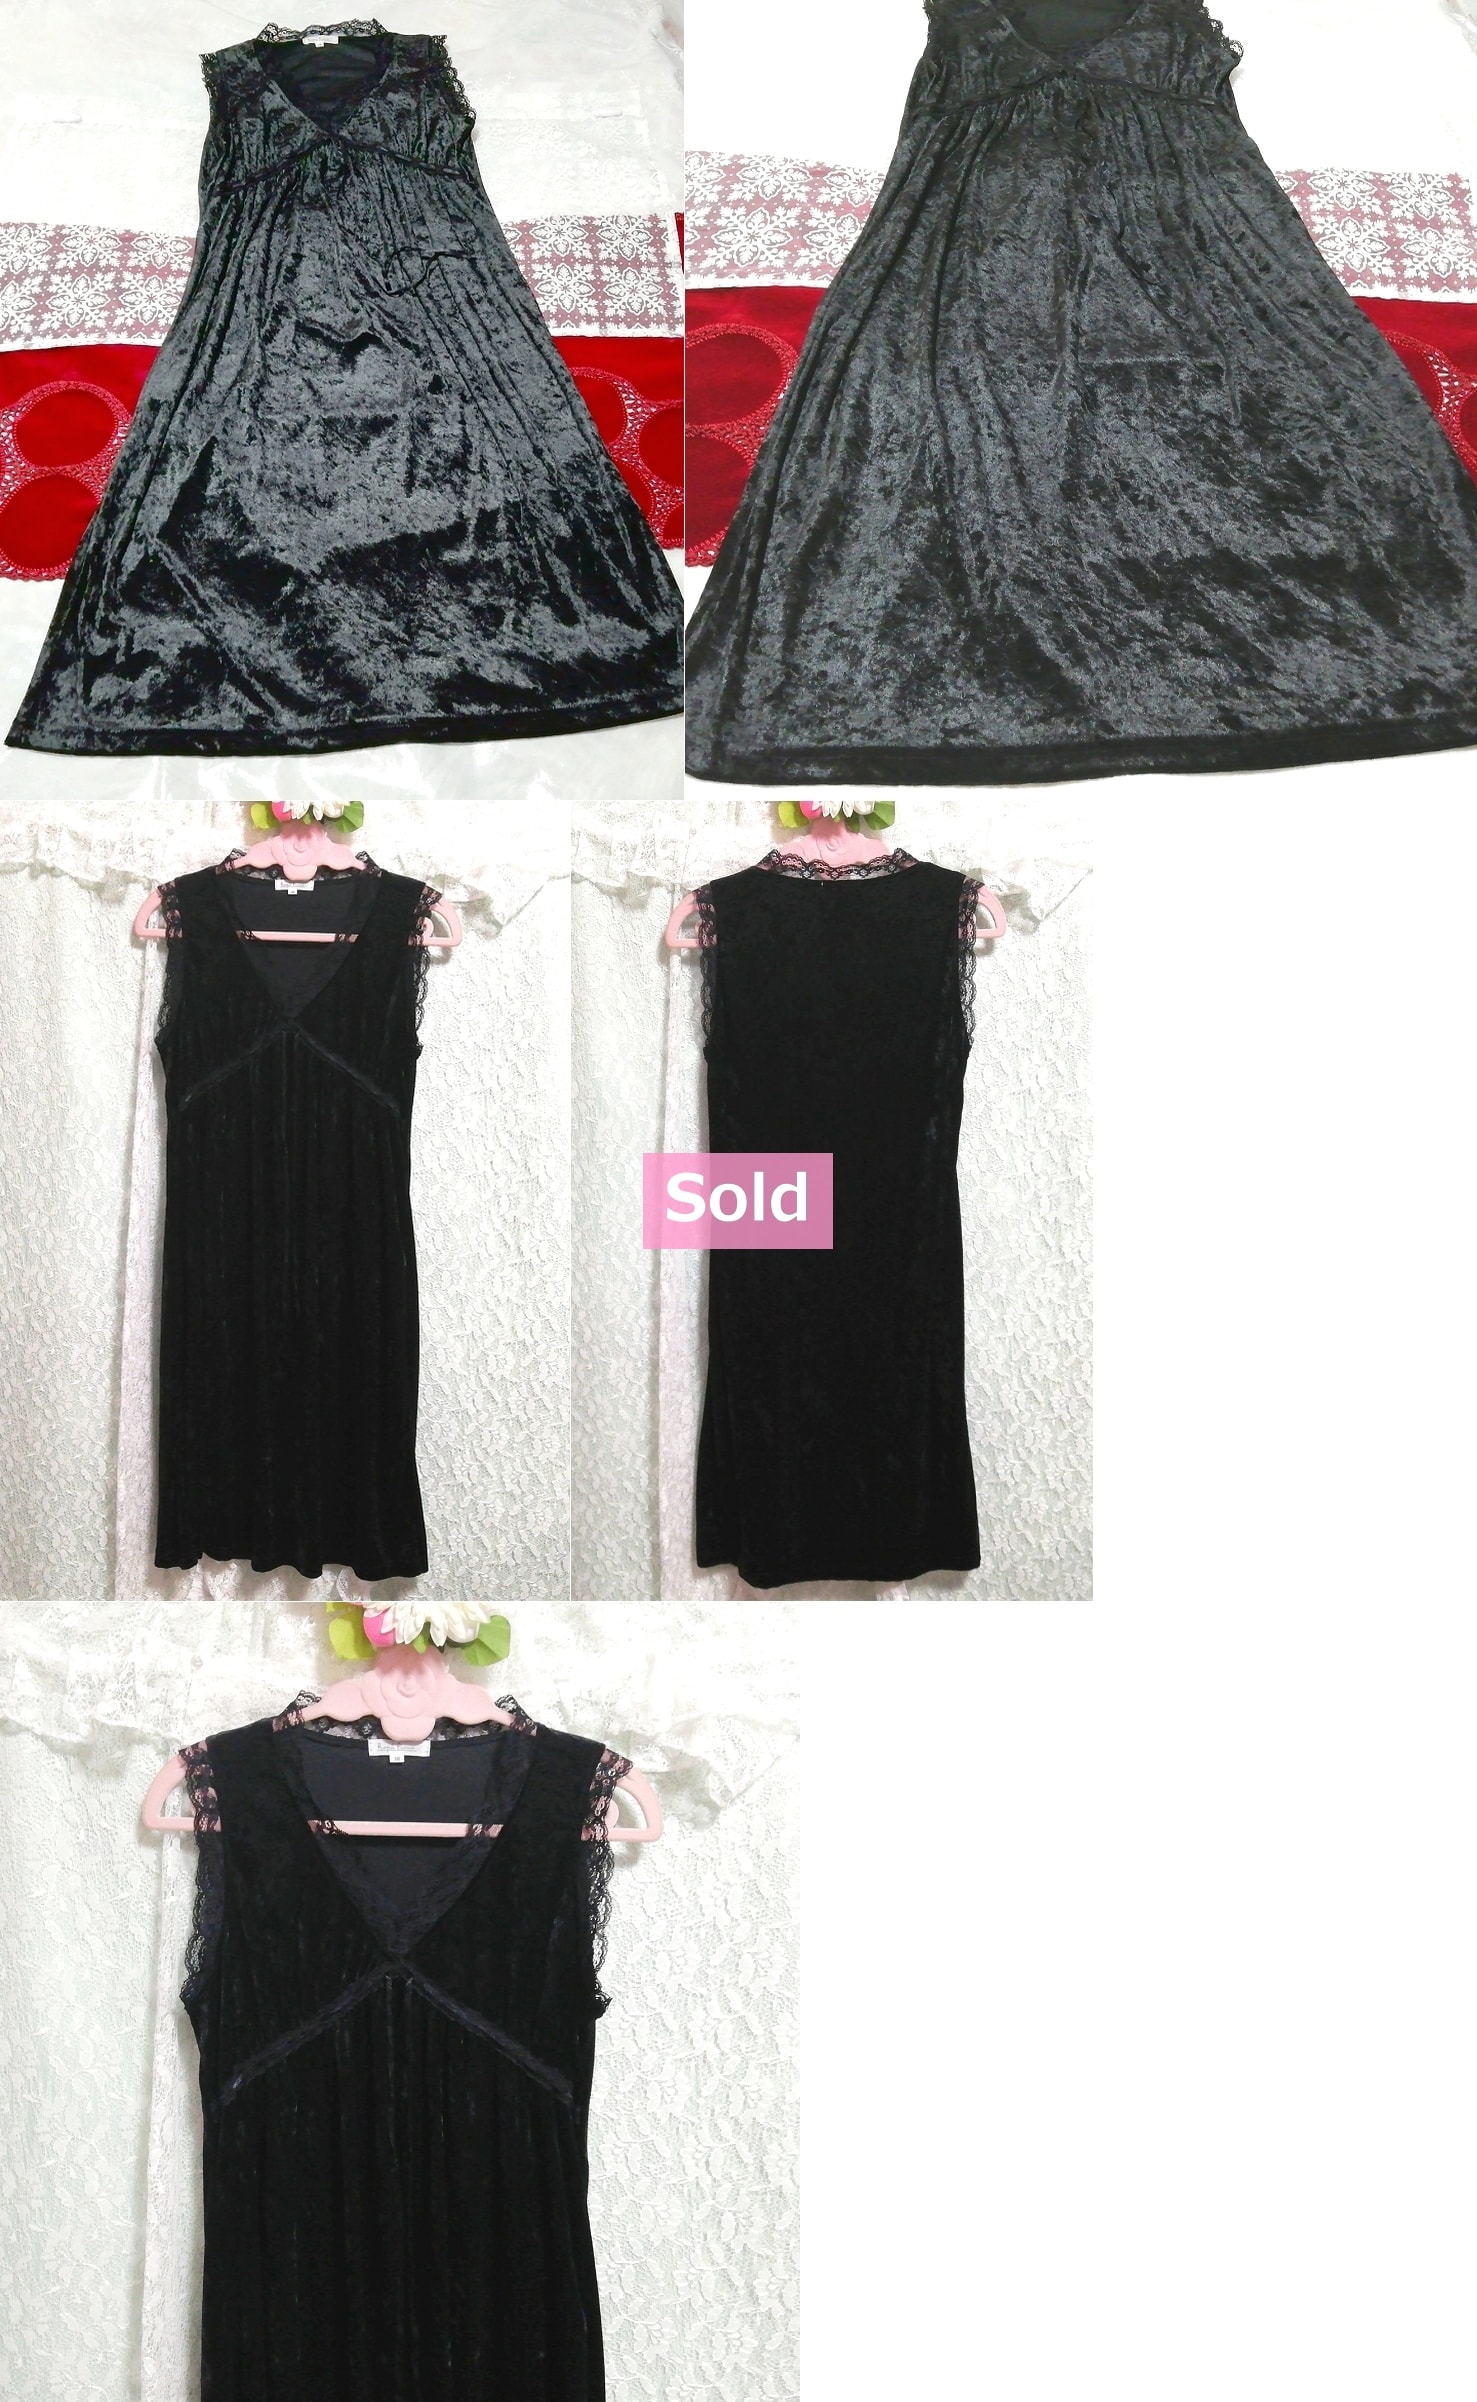 黒レースベロア ネグリジェ ナイトウェア ノースリーブワンピースドレス Black lace velour negligee nightwear sleeveless dress, ファッション, レディースファッション, ナイトウエア、パジャマ